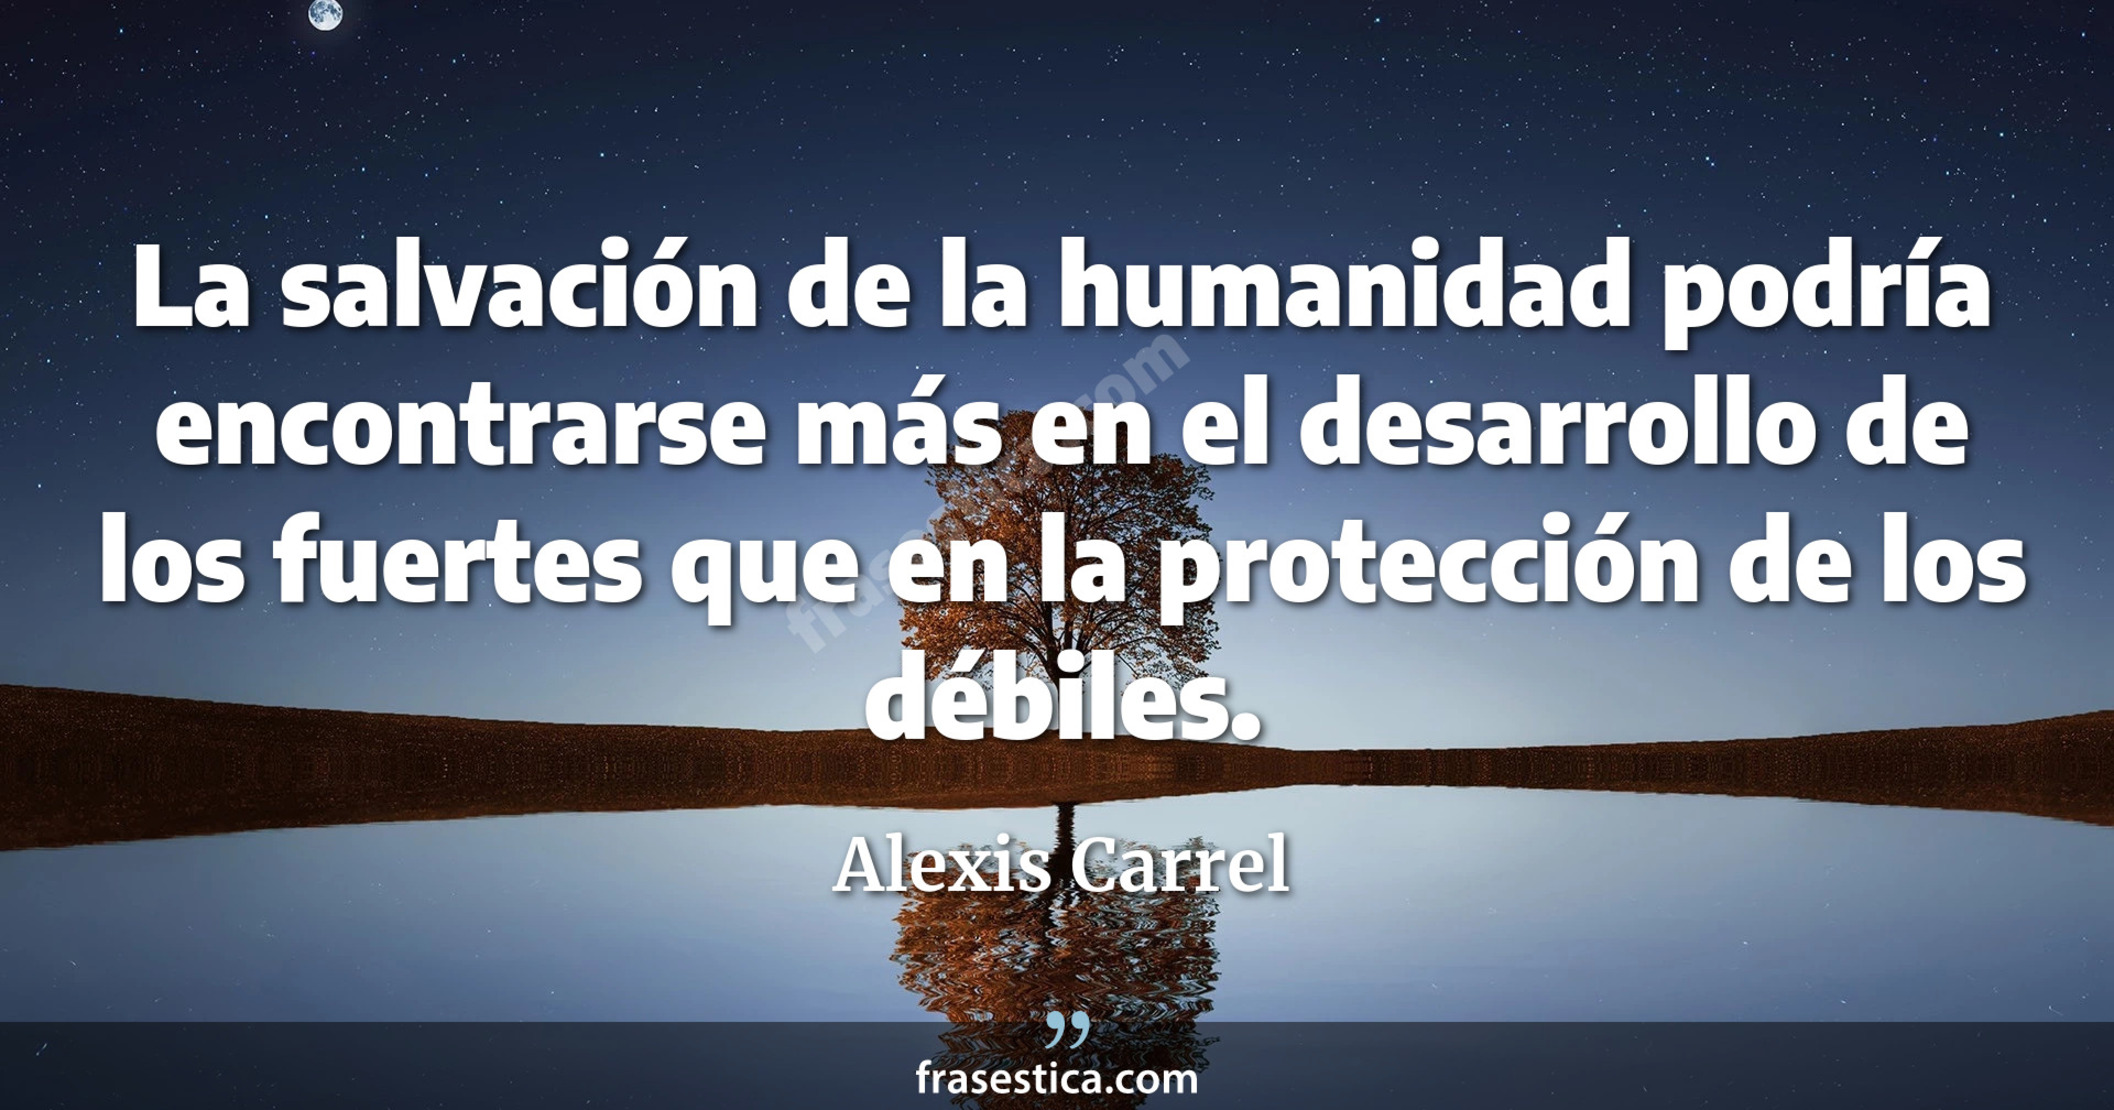 La salvación de la humanidad podría encontrarse más en el desarrollo de los fuertes que en la protección de los débiles. - Alexis Carrel